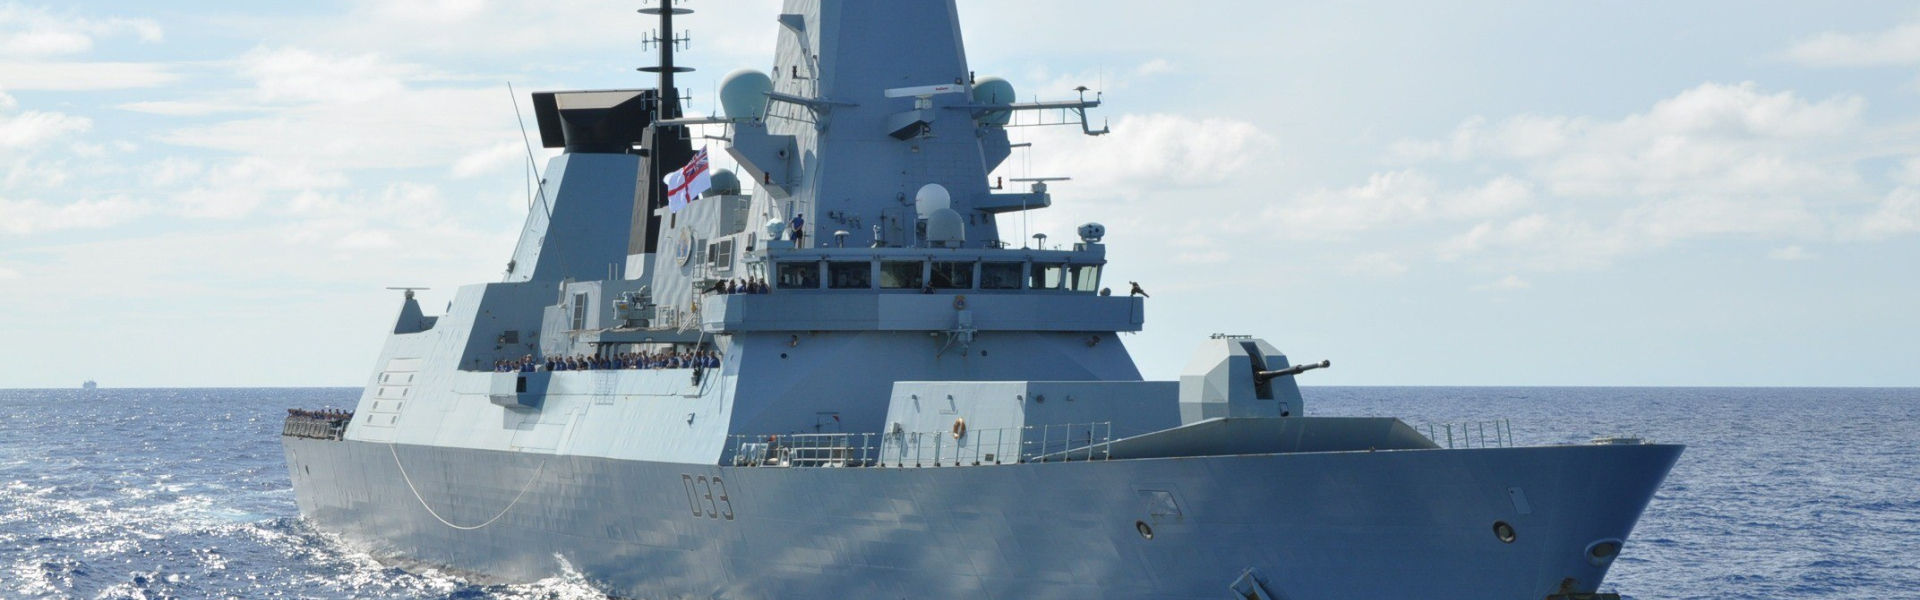 HMS Dauntless at sea